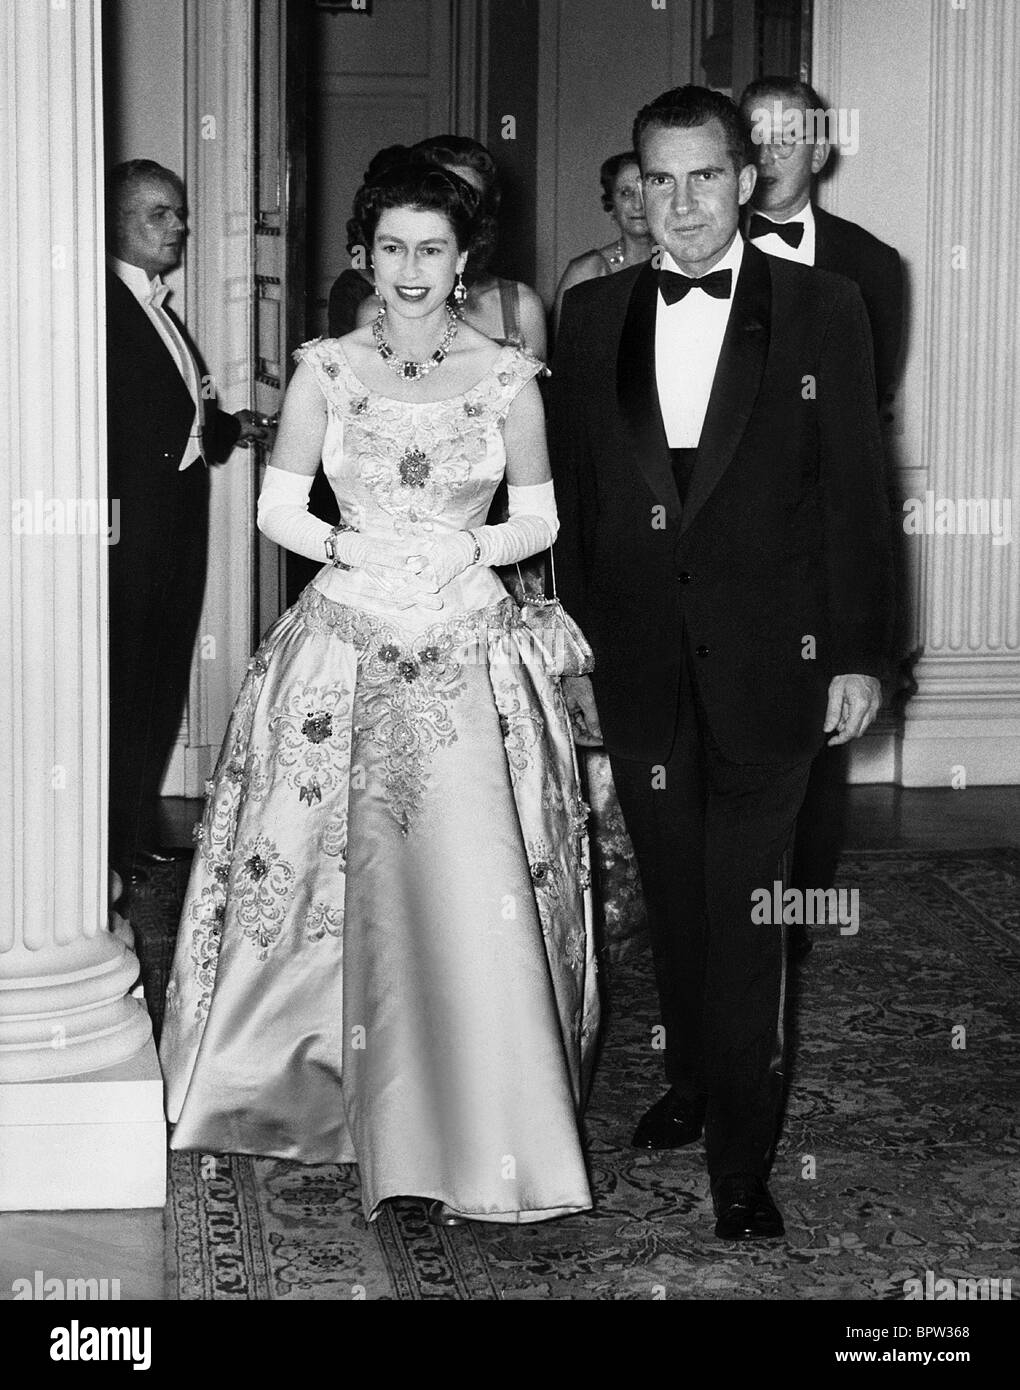 QUEEN ELIZABETH II & RICHARD NIXON QUEEN OF ENGLAND 10 June 1958 Stock Photo